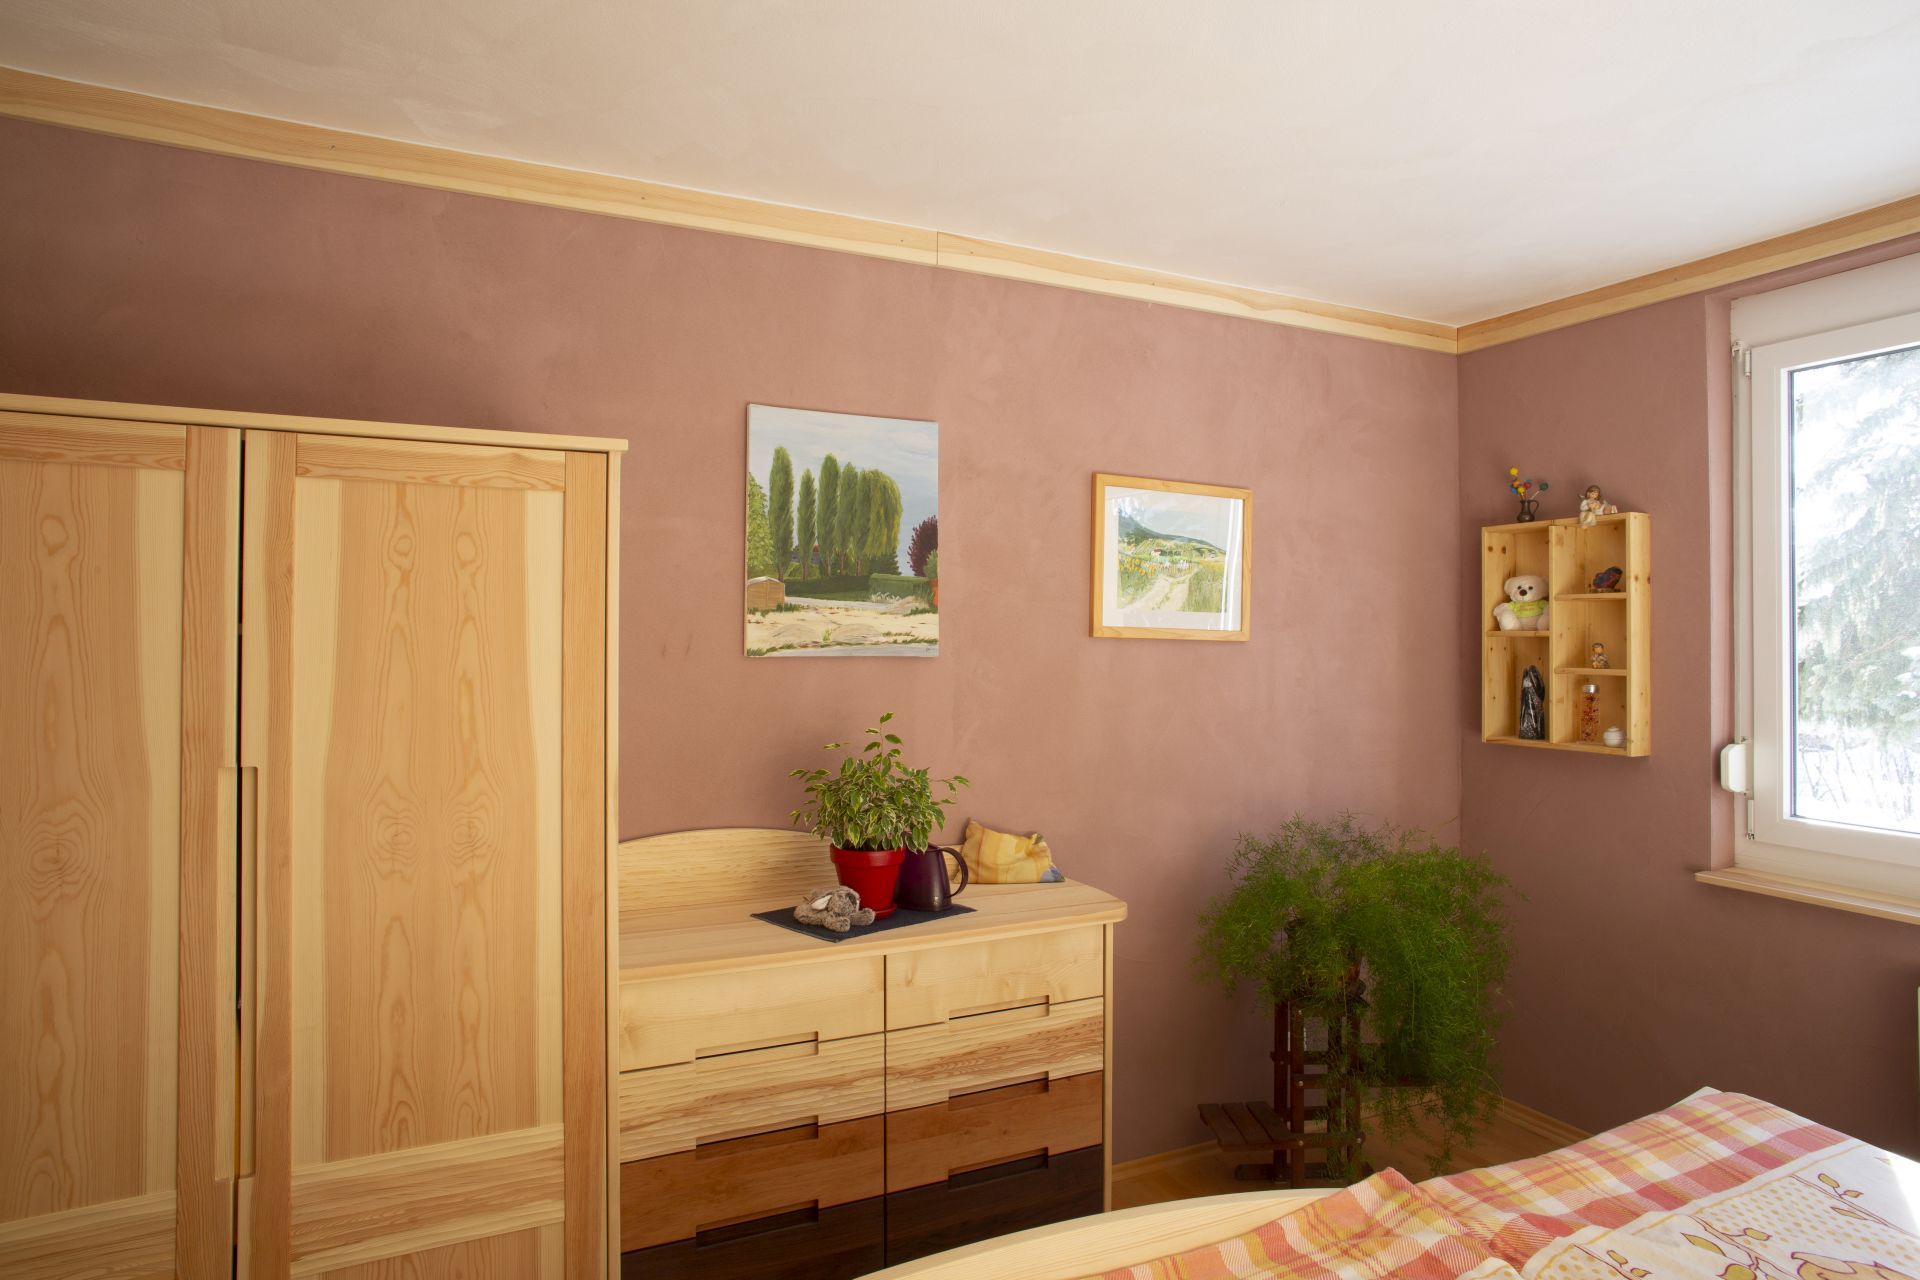 Saniertes Schlafzimmer mit Naturmaterialien und hochwertigen Vollholzmöbeln